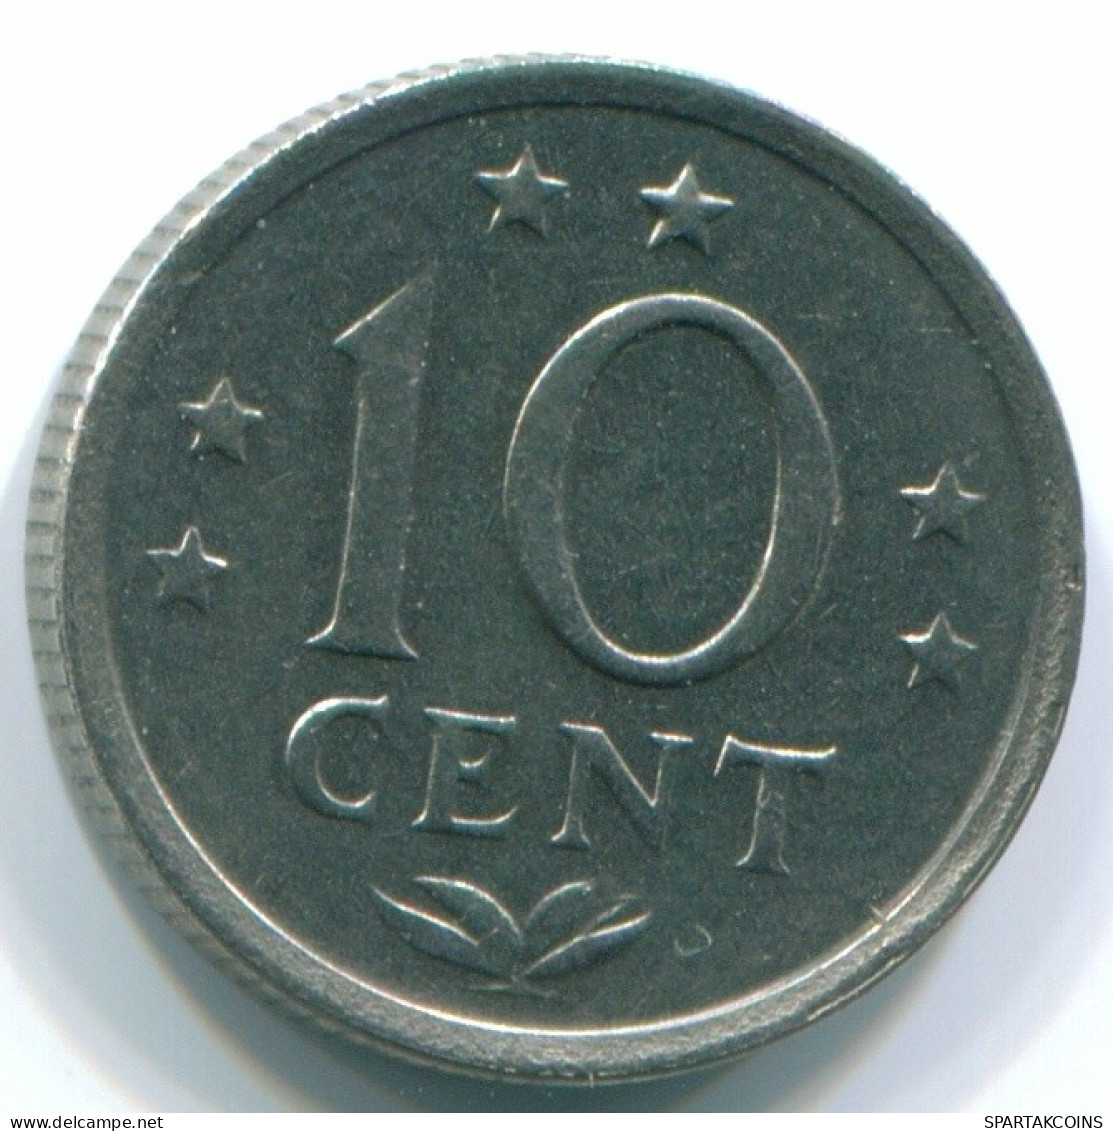 10 CENTS 1970 NIEDERLÄNDISCHE ANTILLEN Nickel Koloniale Münze #S13337.D.A - Antillas Neerlandesas